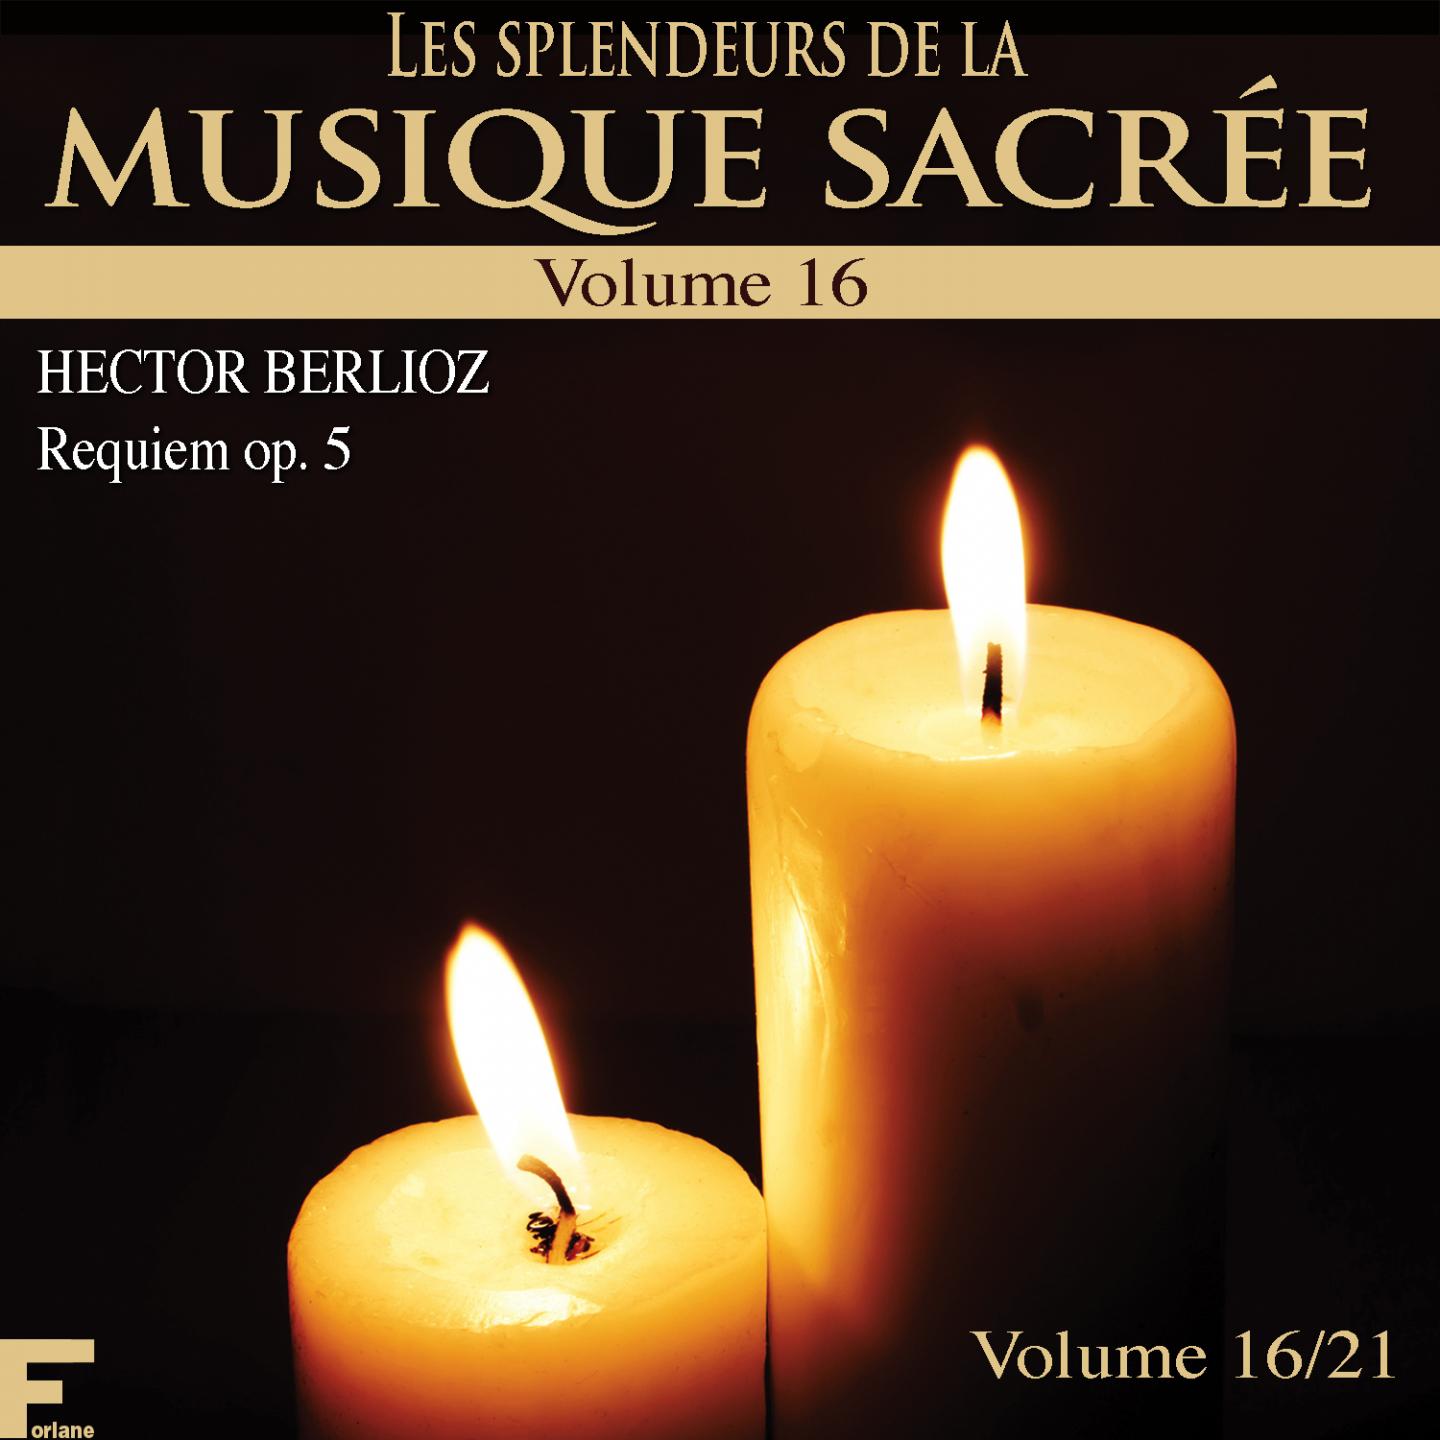 Les splendeurs de la musique sacre e, Vol. 16